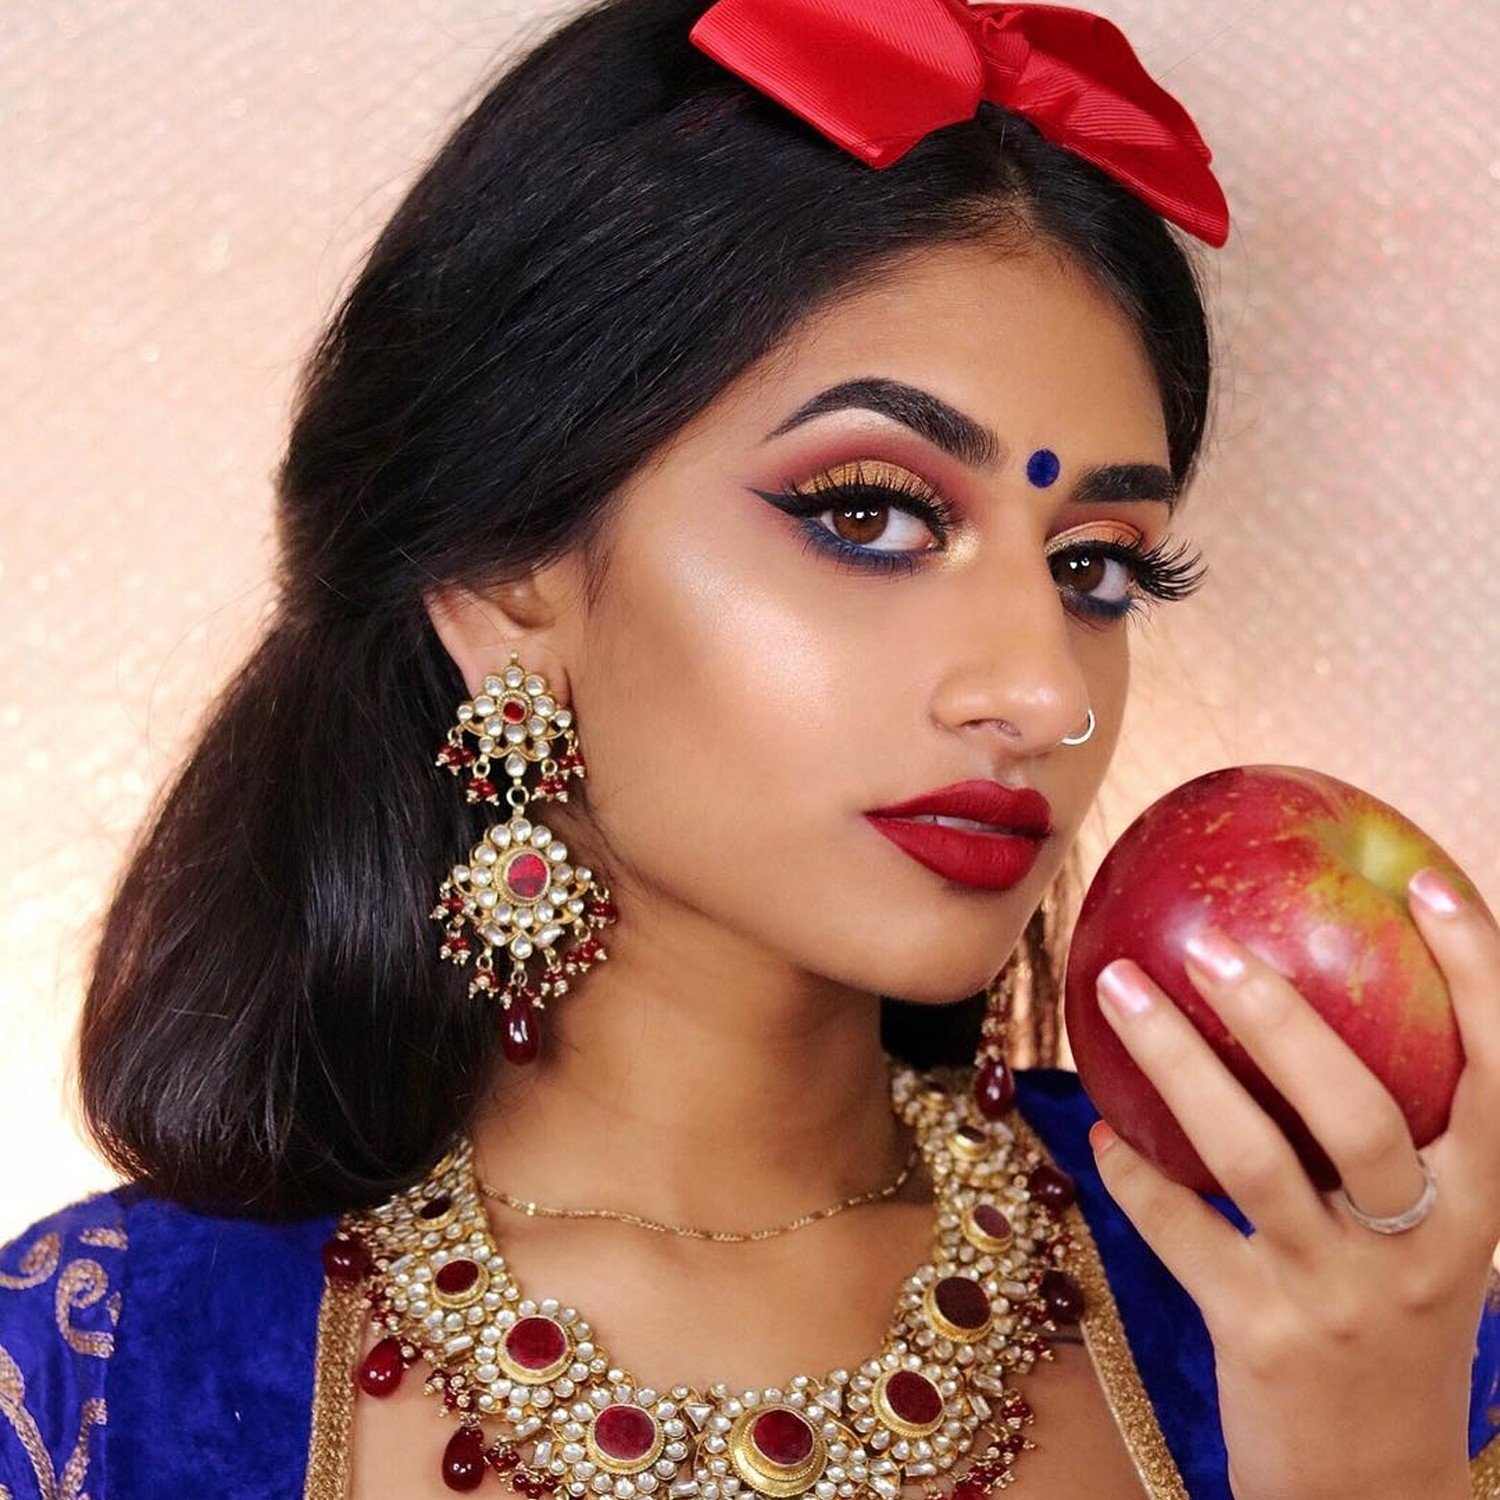 Disney Princesses With Indian Makeup | POPSUGAR Beauty UK